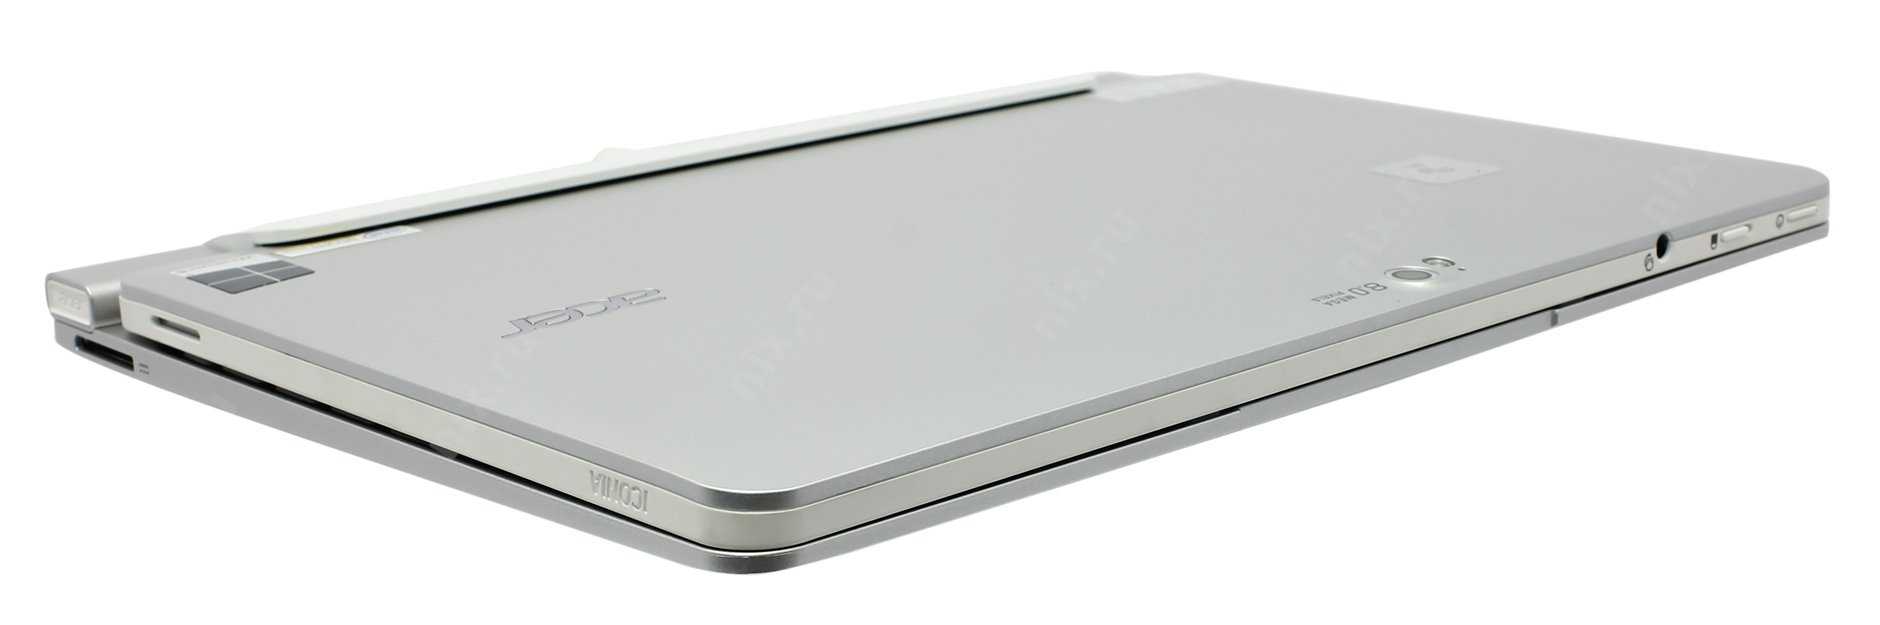 Acer iconia tab a510 32gb купить по акционной цене , отзывы и обзоры.